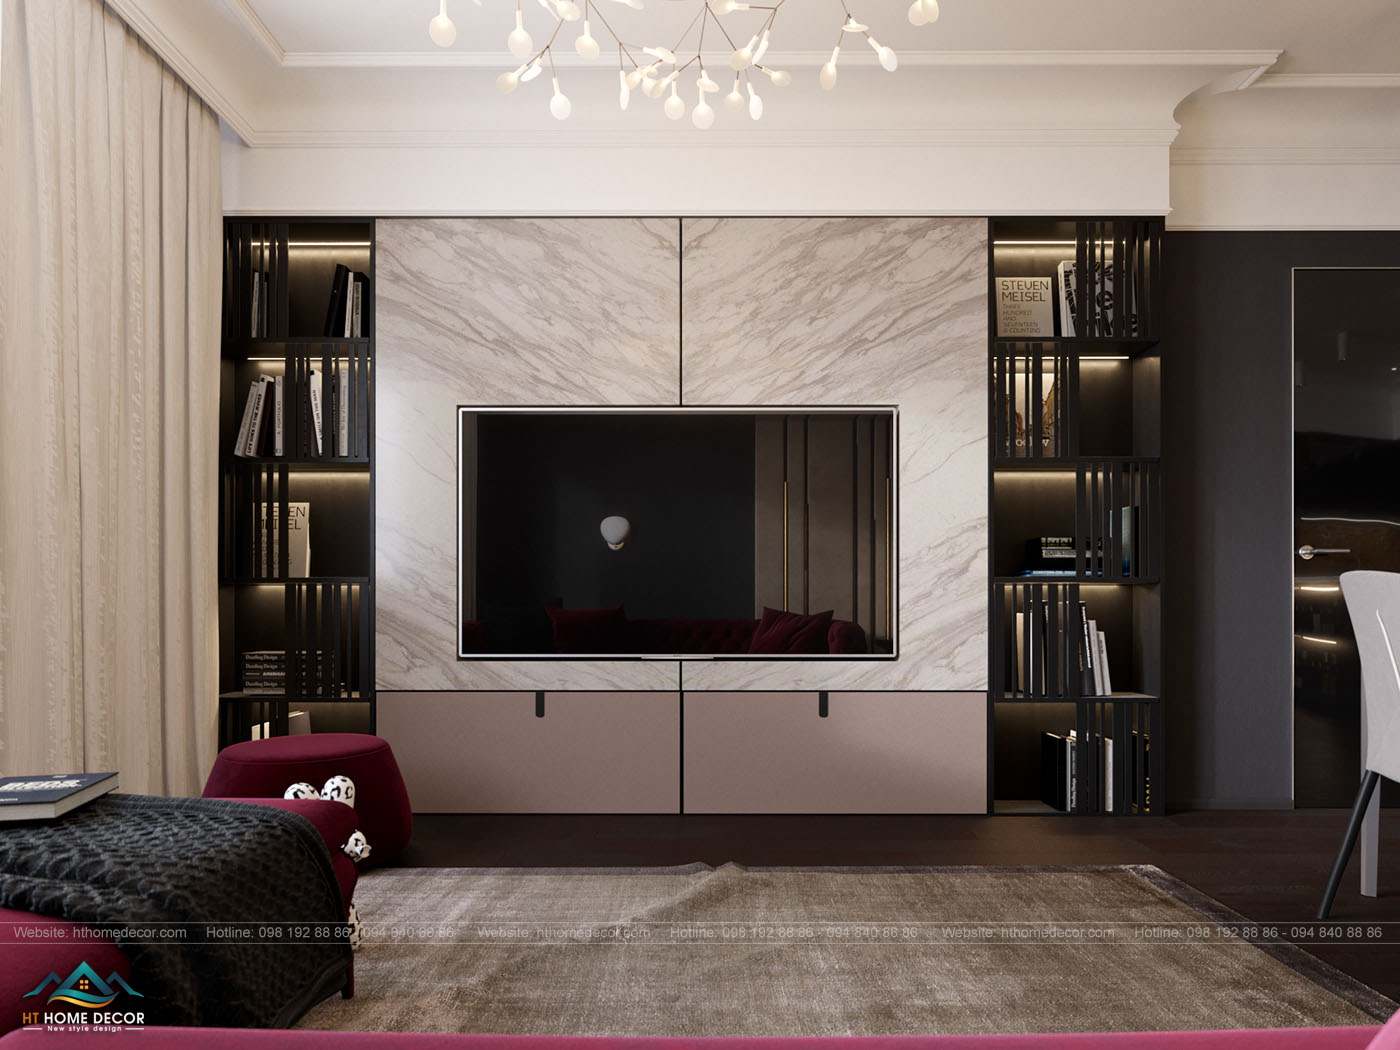 Nội thất phòng khách là sự kết hợp giữa gam màu trung tính và màu trắng đơn sắc, nâu trầm tôn lên vẻ đẹp của nội thất, mang lại điểm nhấn cho không gian sống của gia chủ.